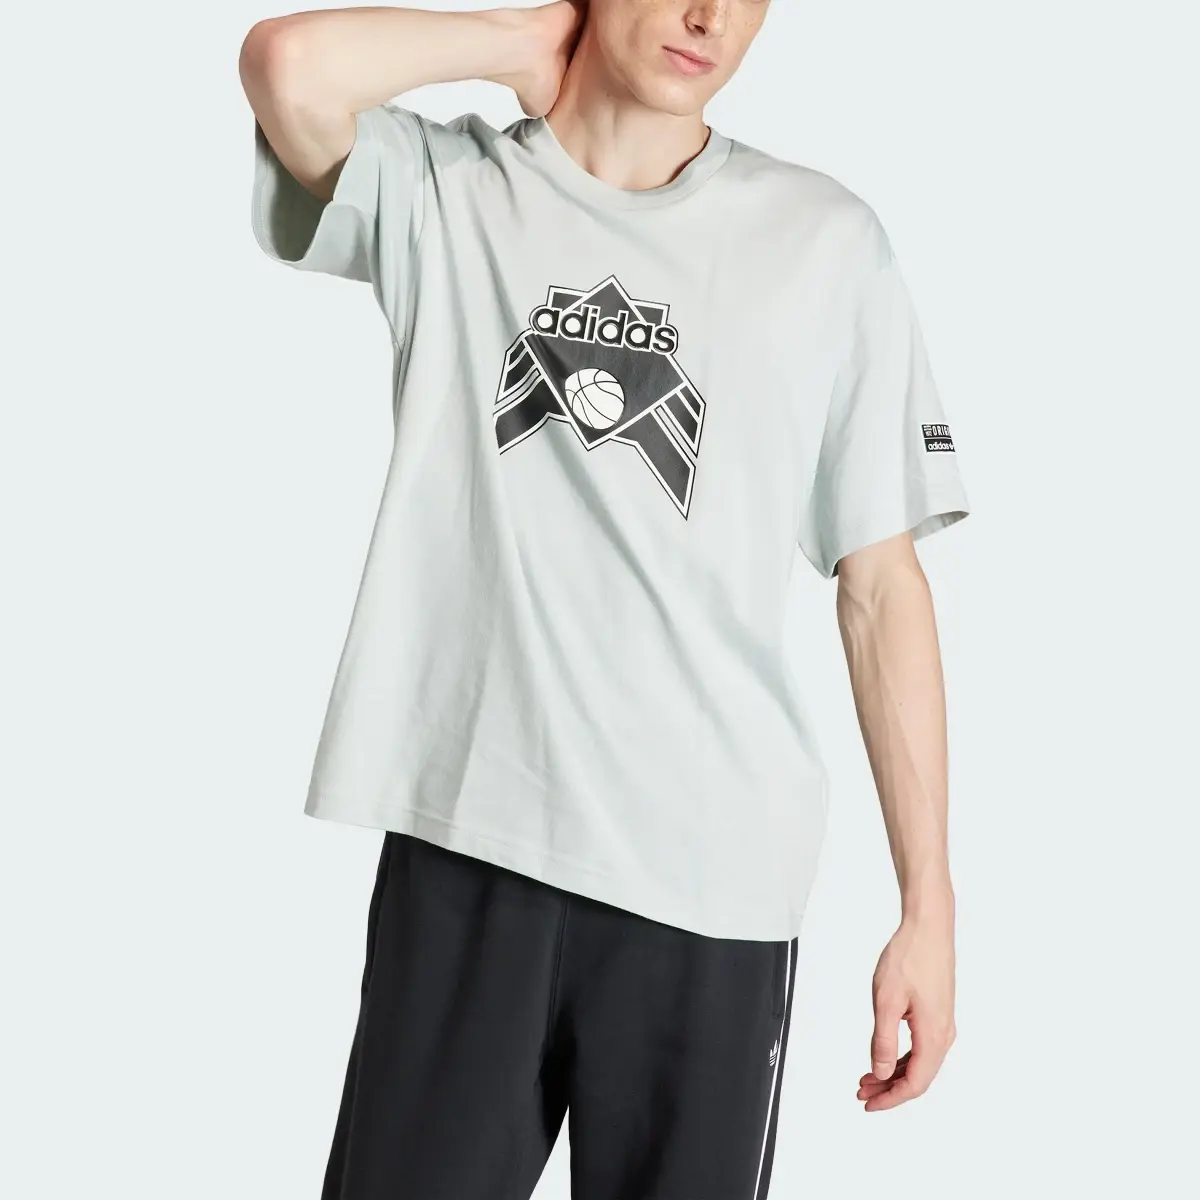 Adidas T-shirt graphique. 1